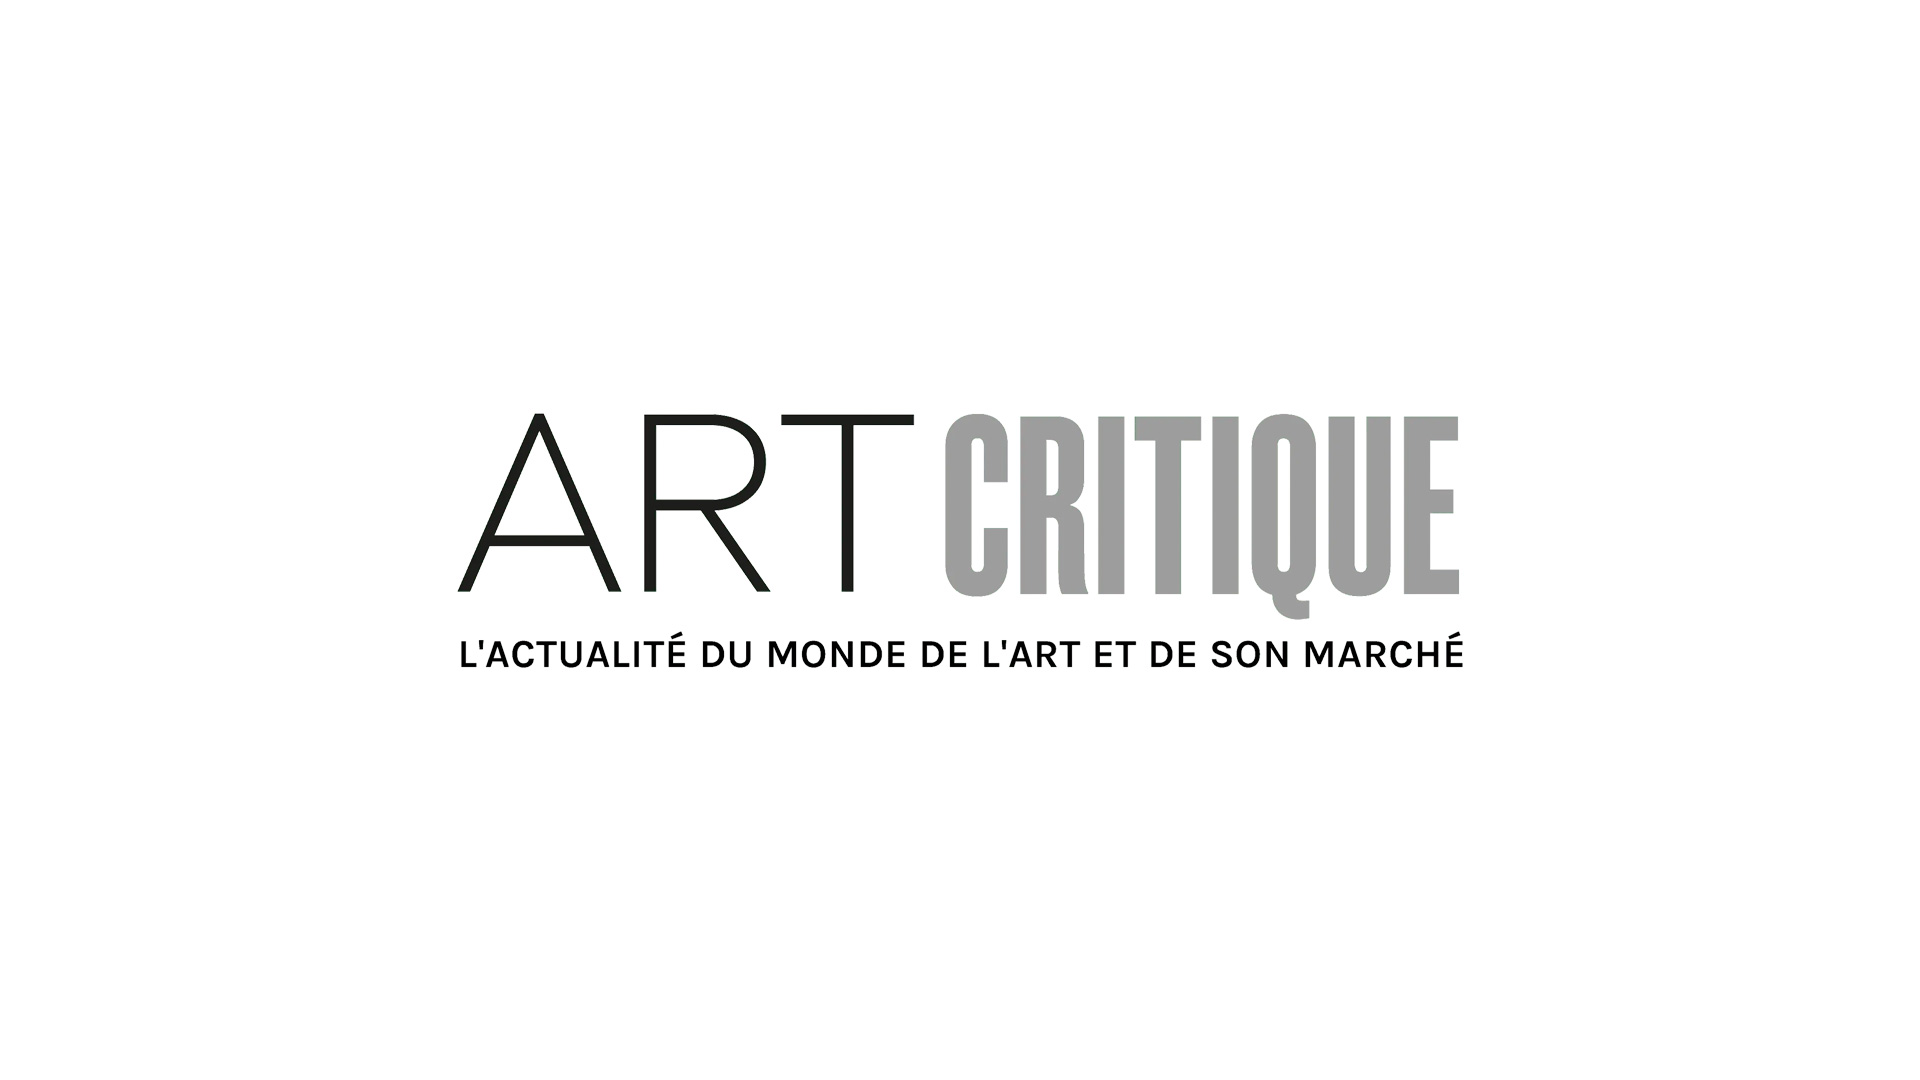 Xavier Rey nommé directeur du Musée national d’Art moderne